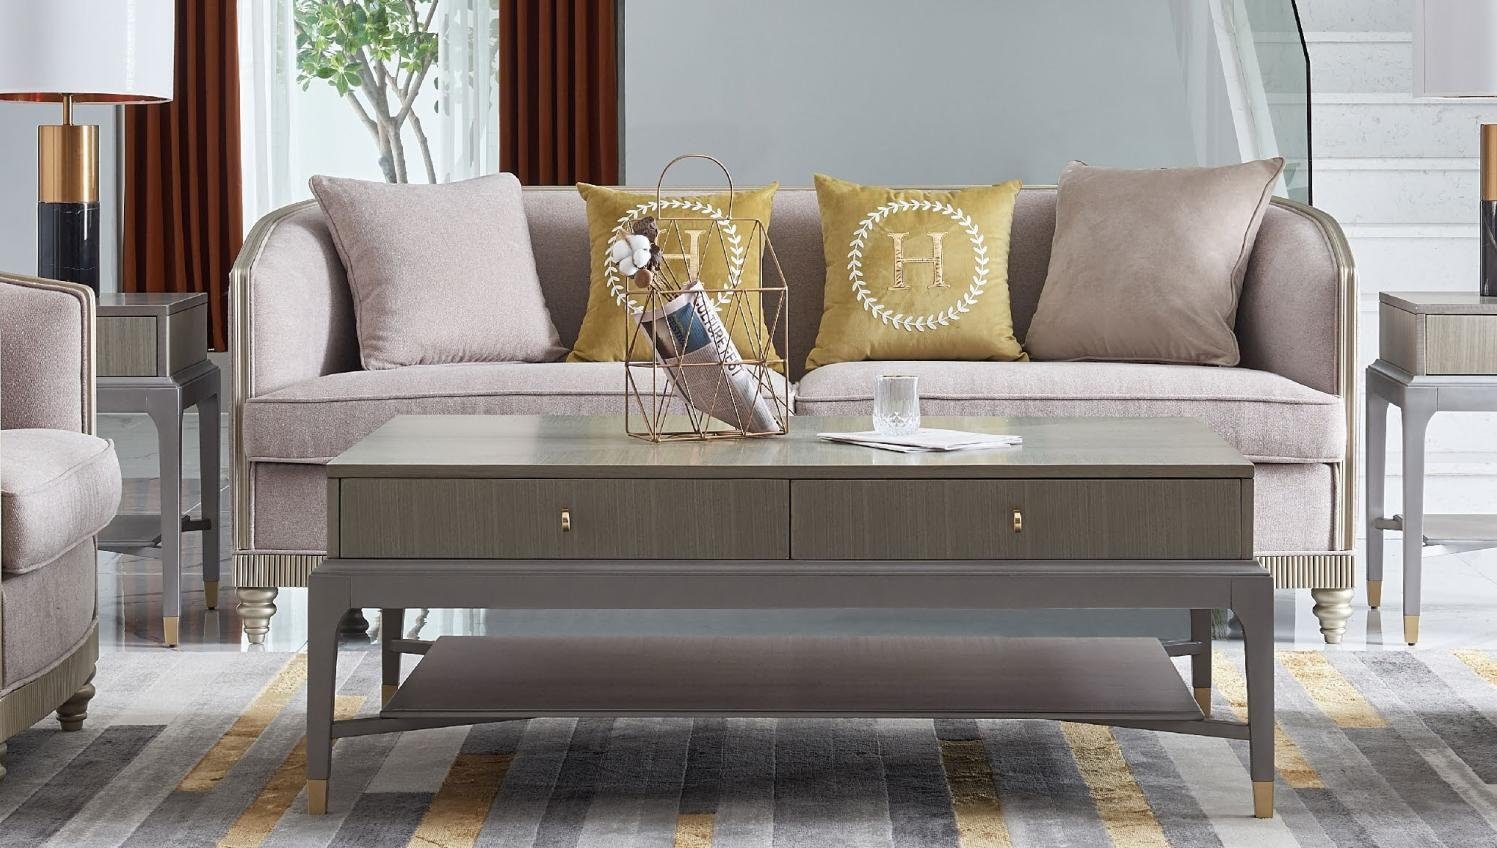 JVmoebel Sofa 3-er Dreisitzer Textil Neu, moderne Couch in beige Made Europe Polstermöbel